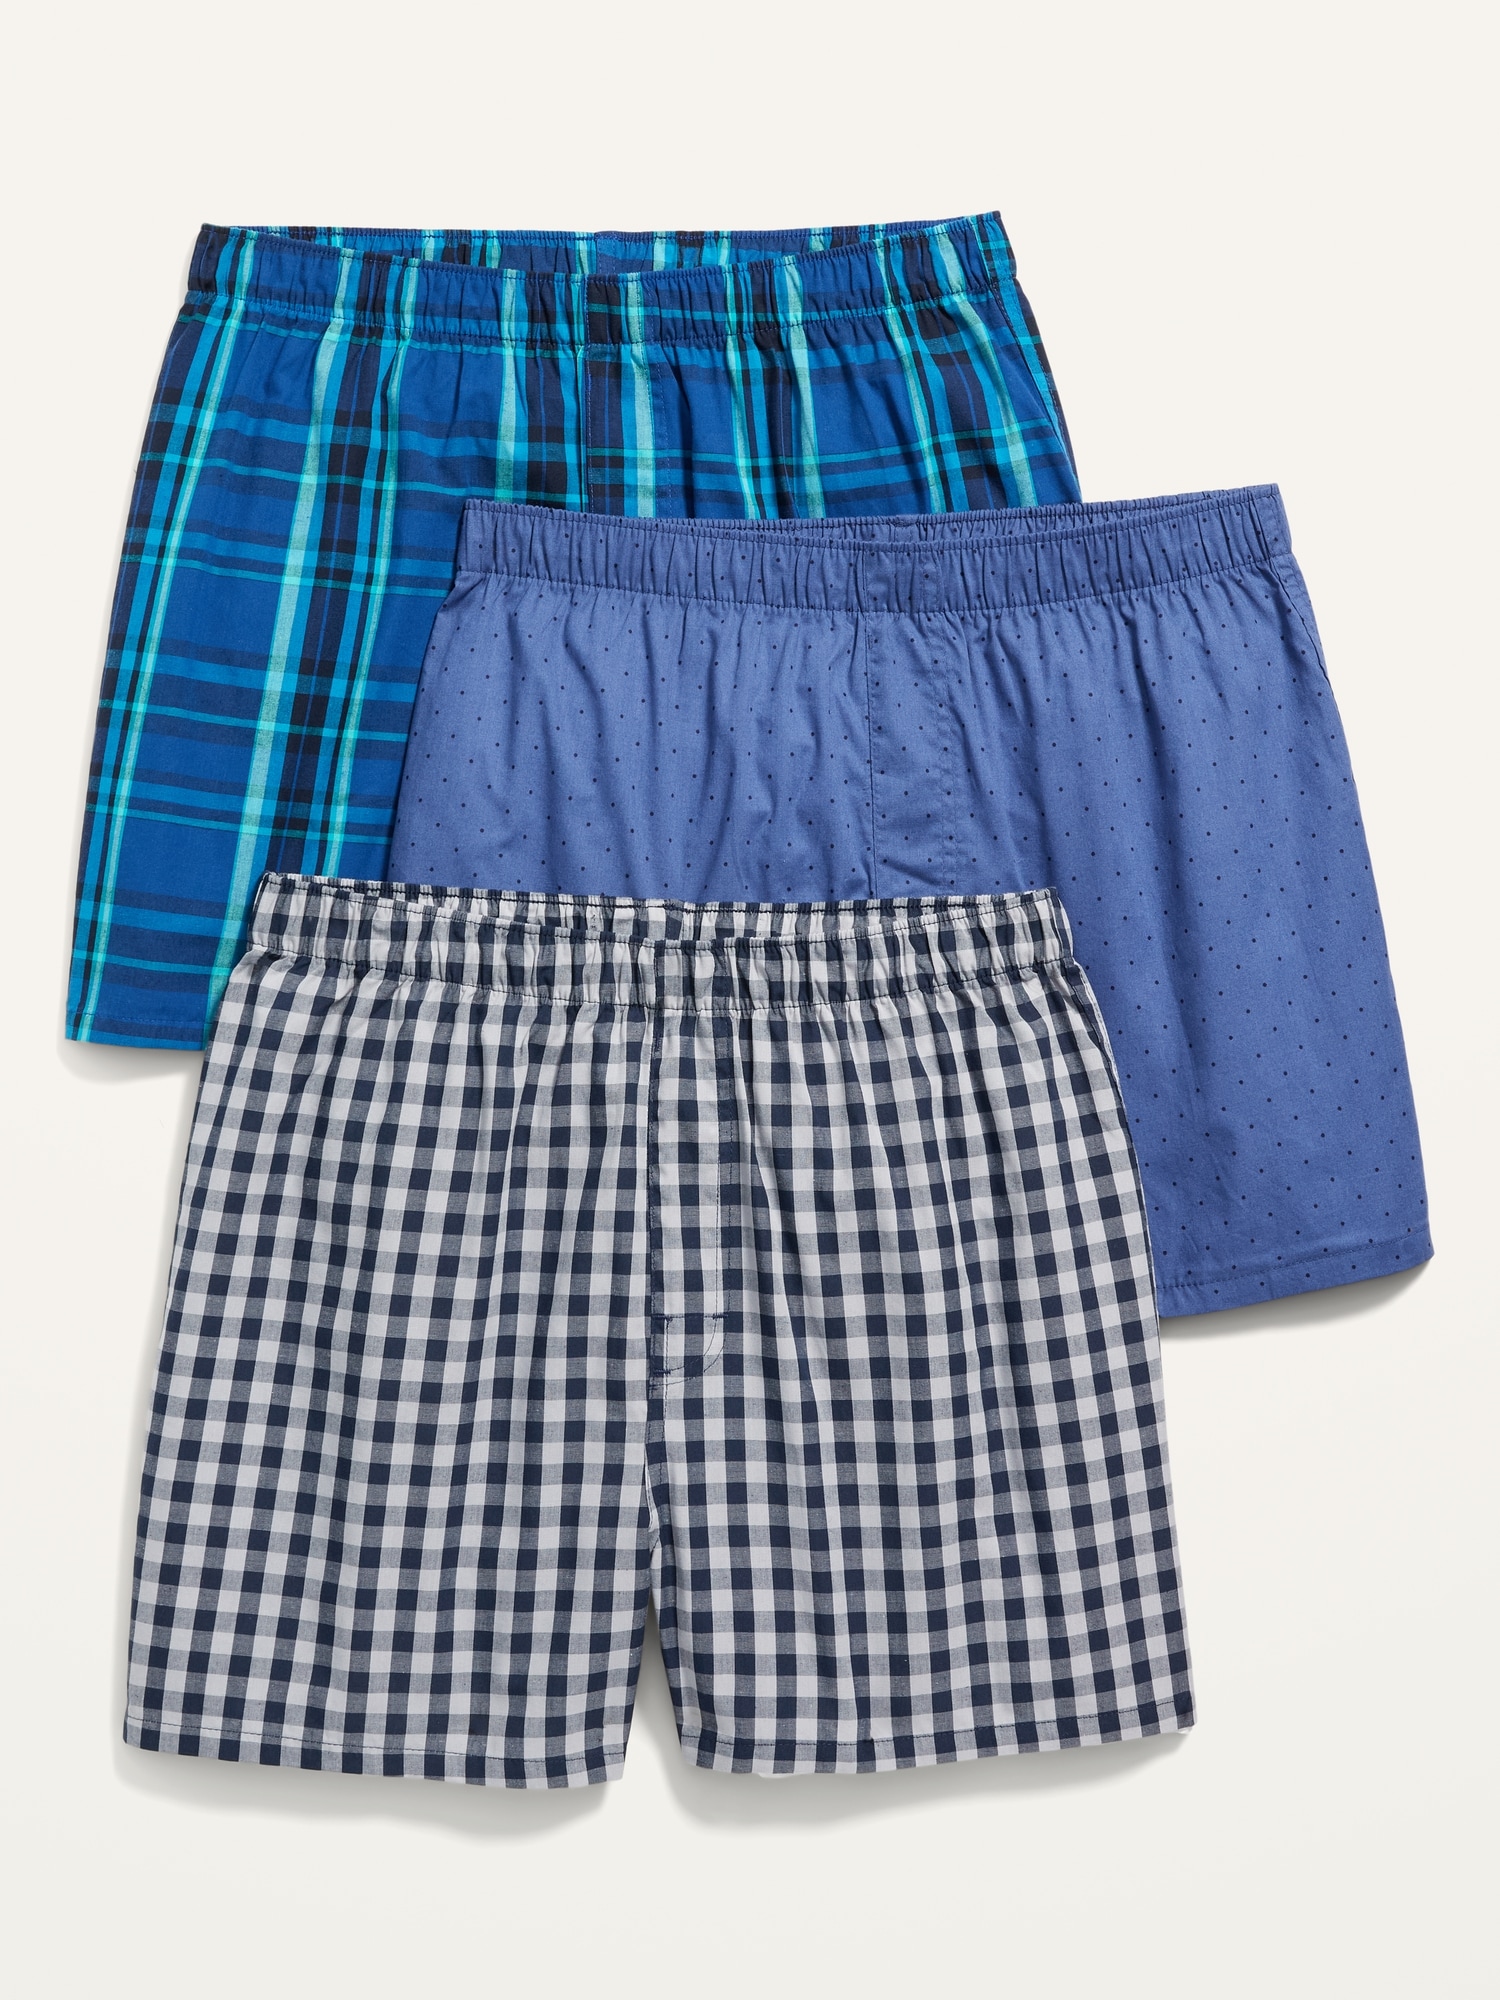 Men's Comfort Fit Boxer Shorts - Blue Multi, Green Multi & White